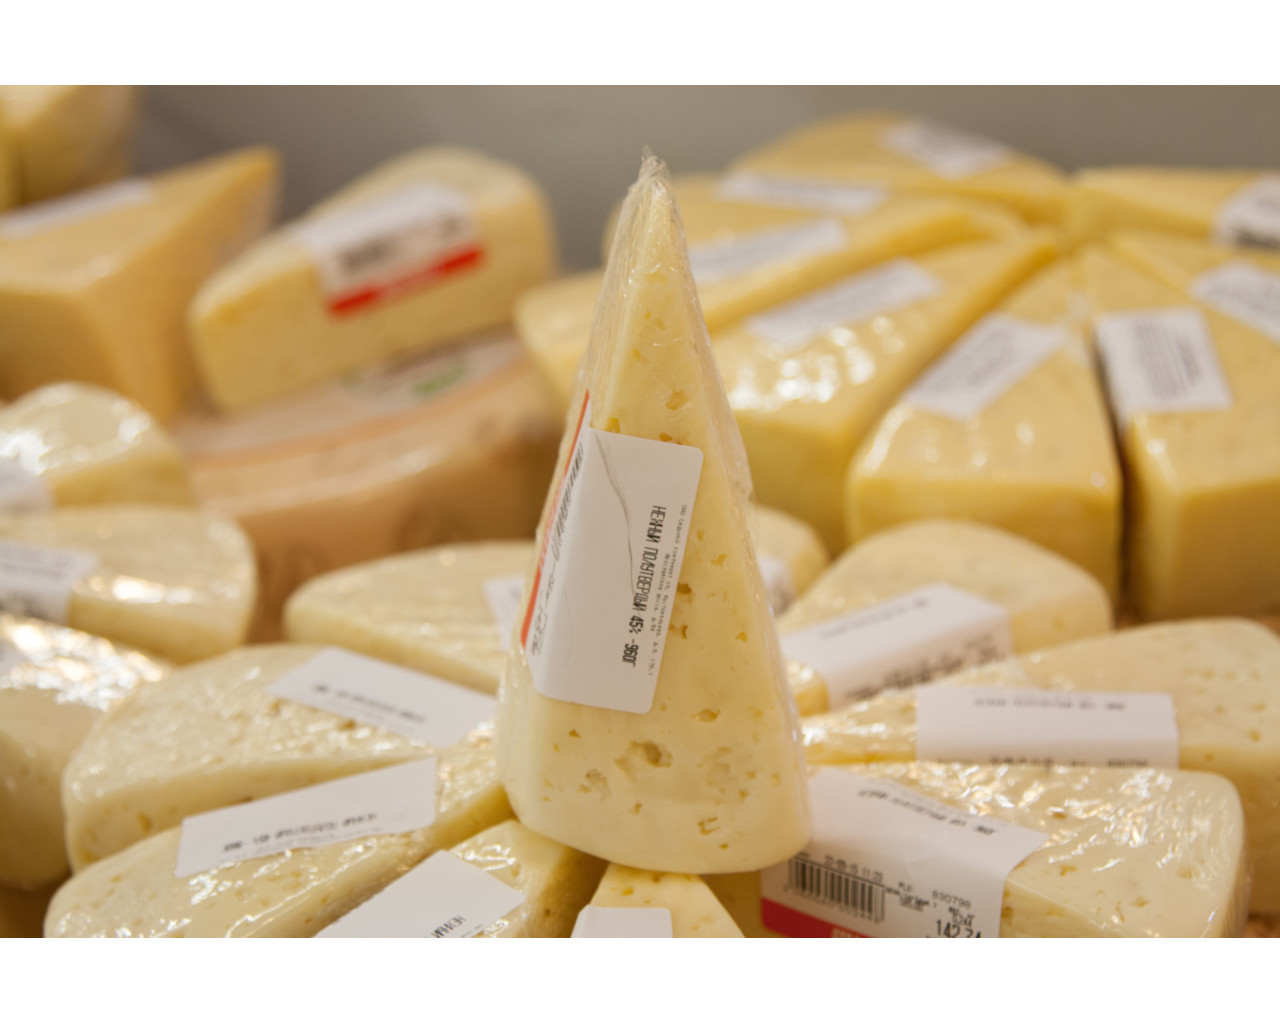 60%  сыров в российских магазинах - фальсификат рис-2